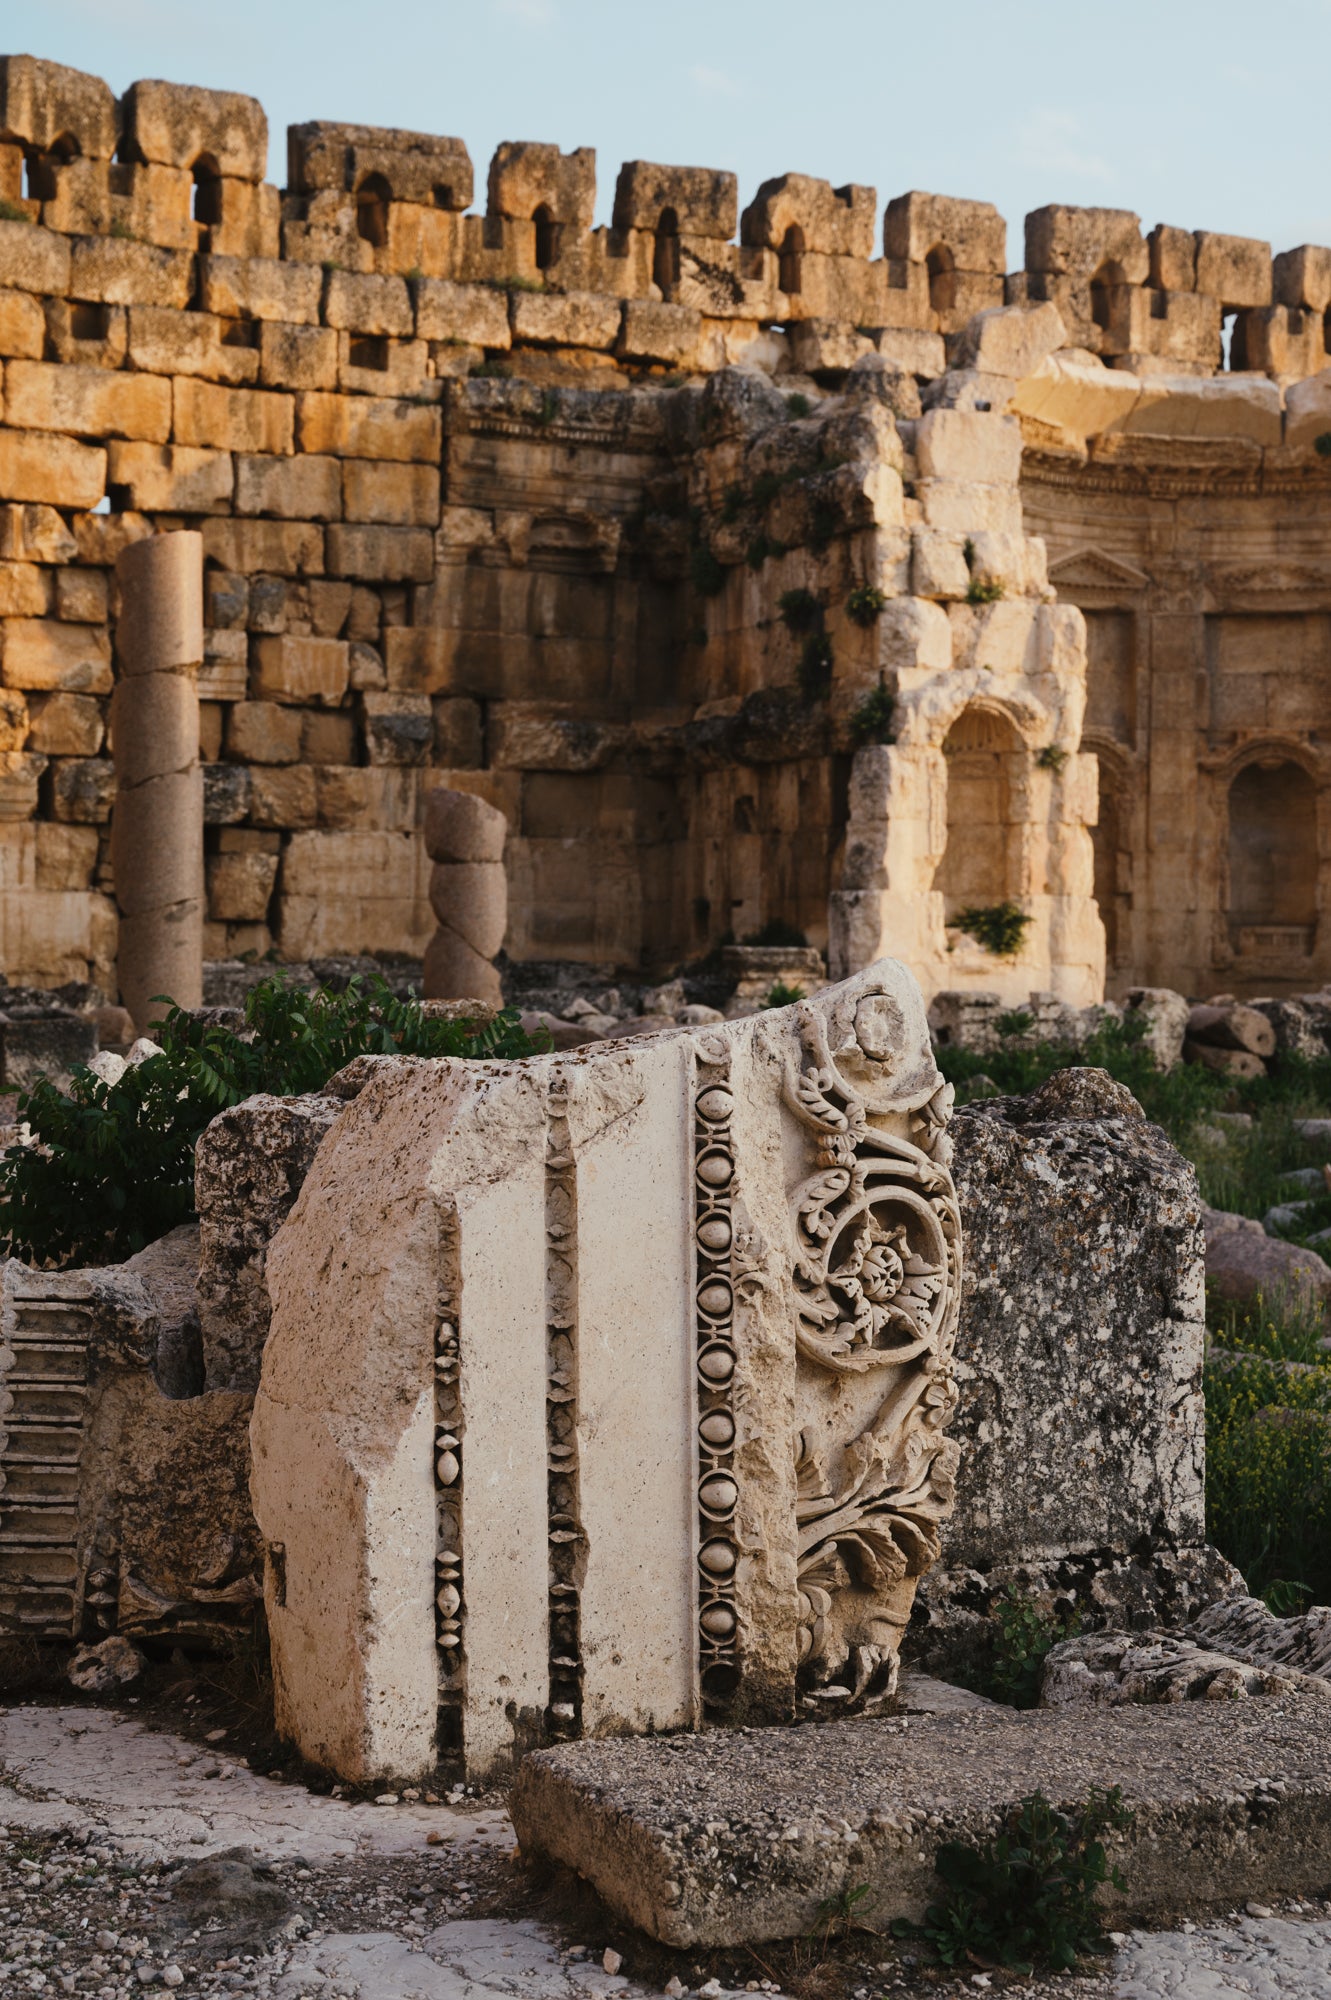 Temple of Jupiter, Baalbek, Lebanon.